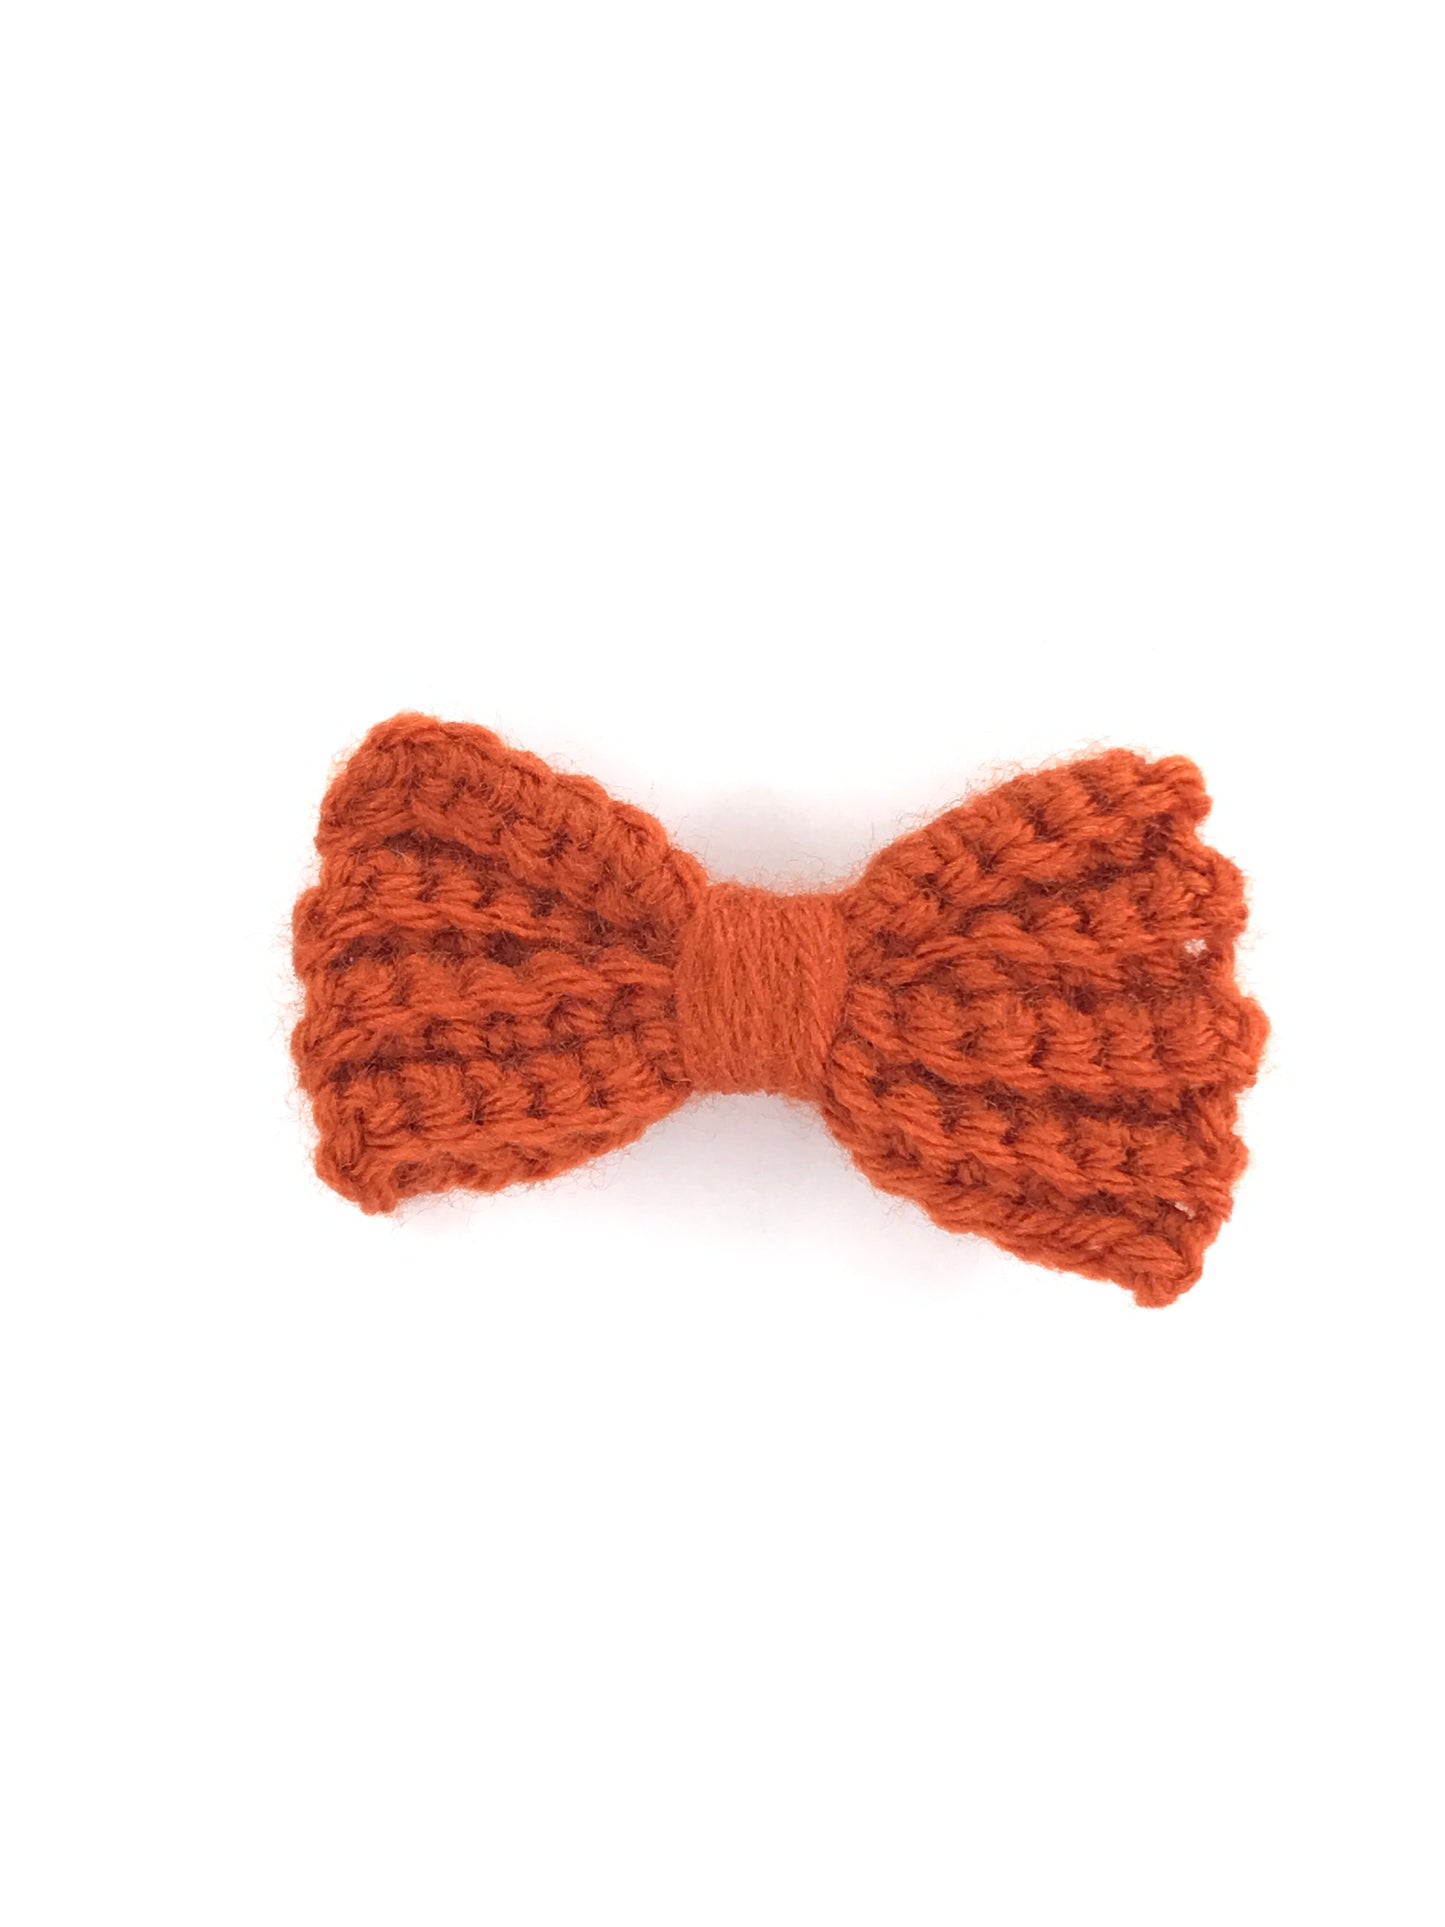 Crochet Hair Bows - Crochet Bow Clips